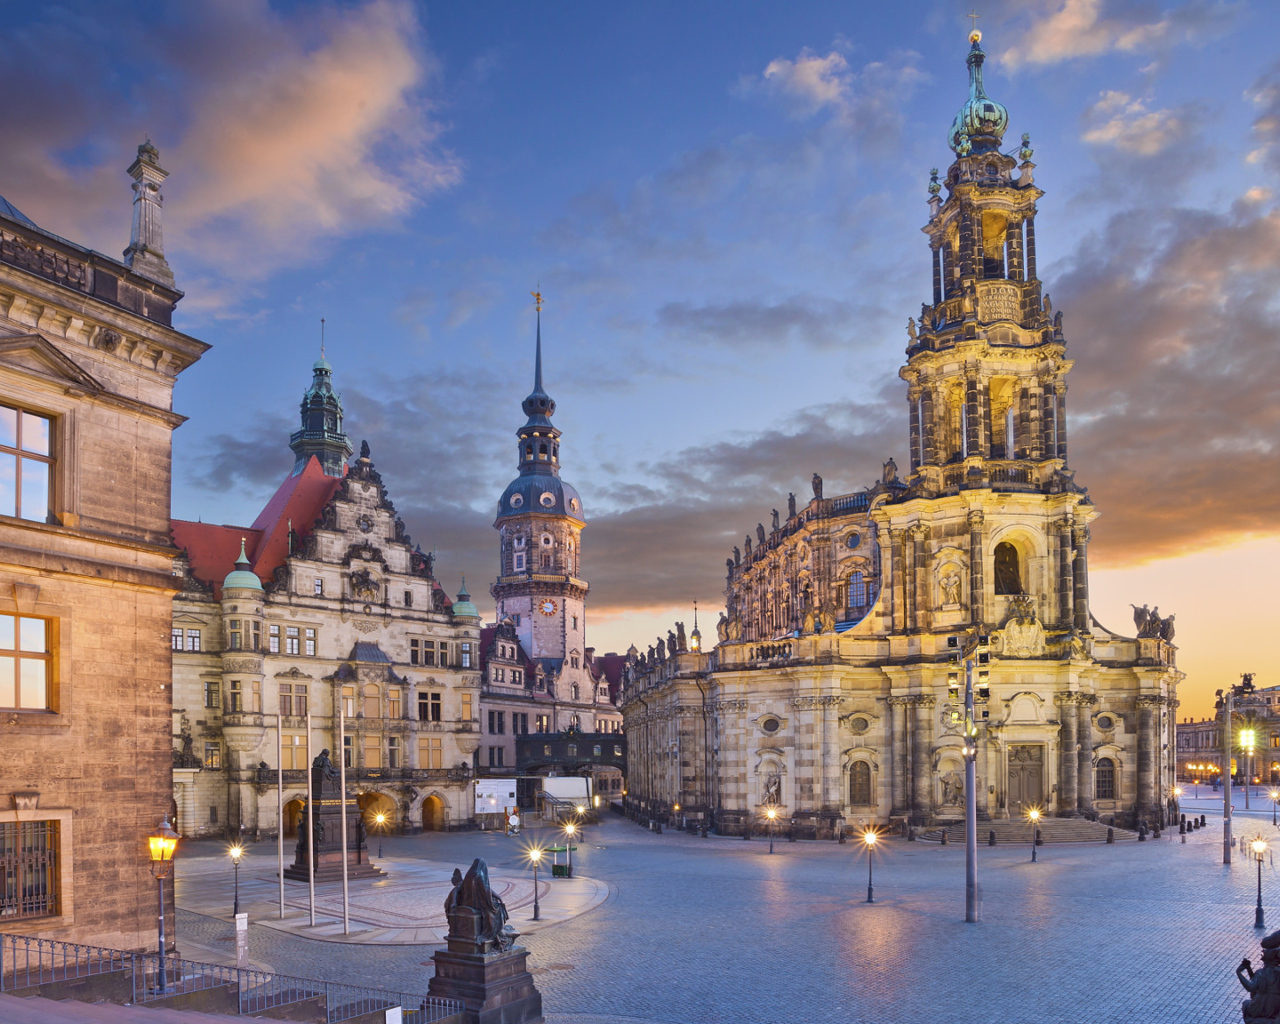 Старинная архитектура города Дрезден, Германия 